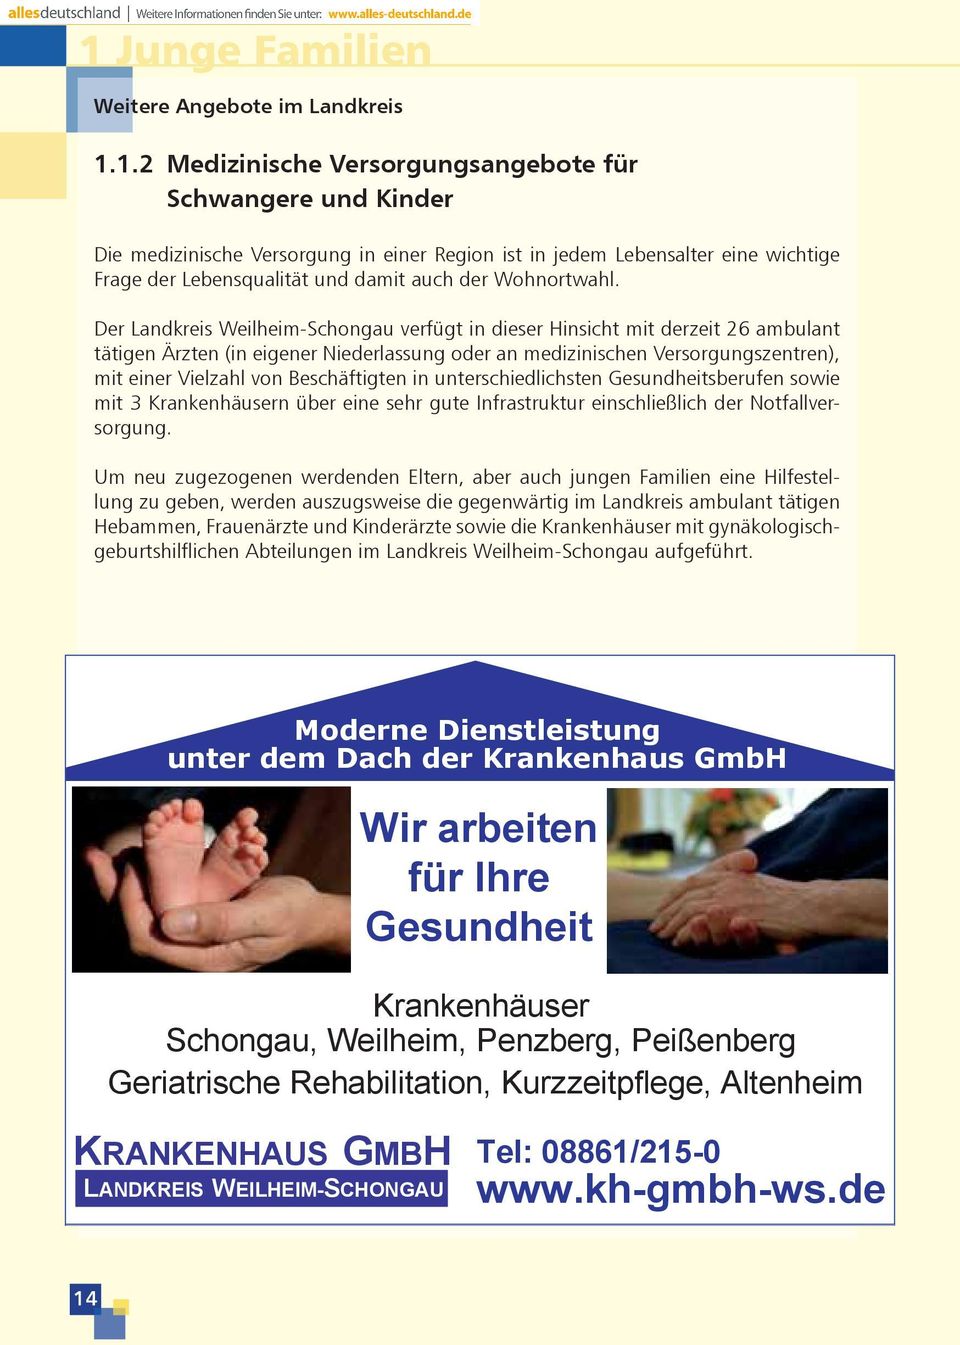 Der Landkreis Weilheim-Schongau verfügt in dieser Hinsicht mit derzeit 26 ambulant tätigen Ärzten (in eigener Niederlassung oder an medizinischen Versorgungszentren), mit einer Vielzahl von